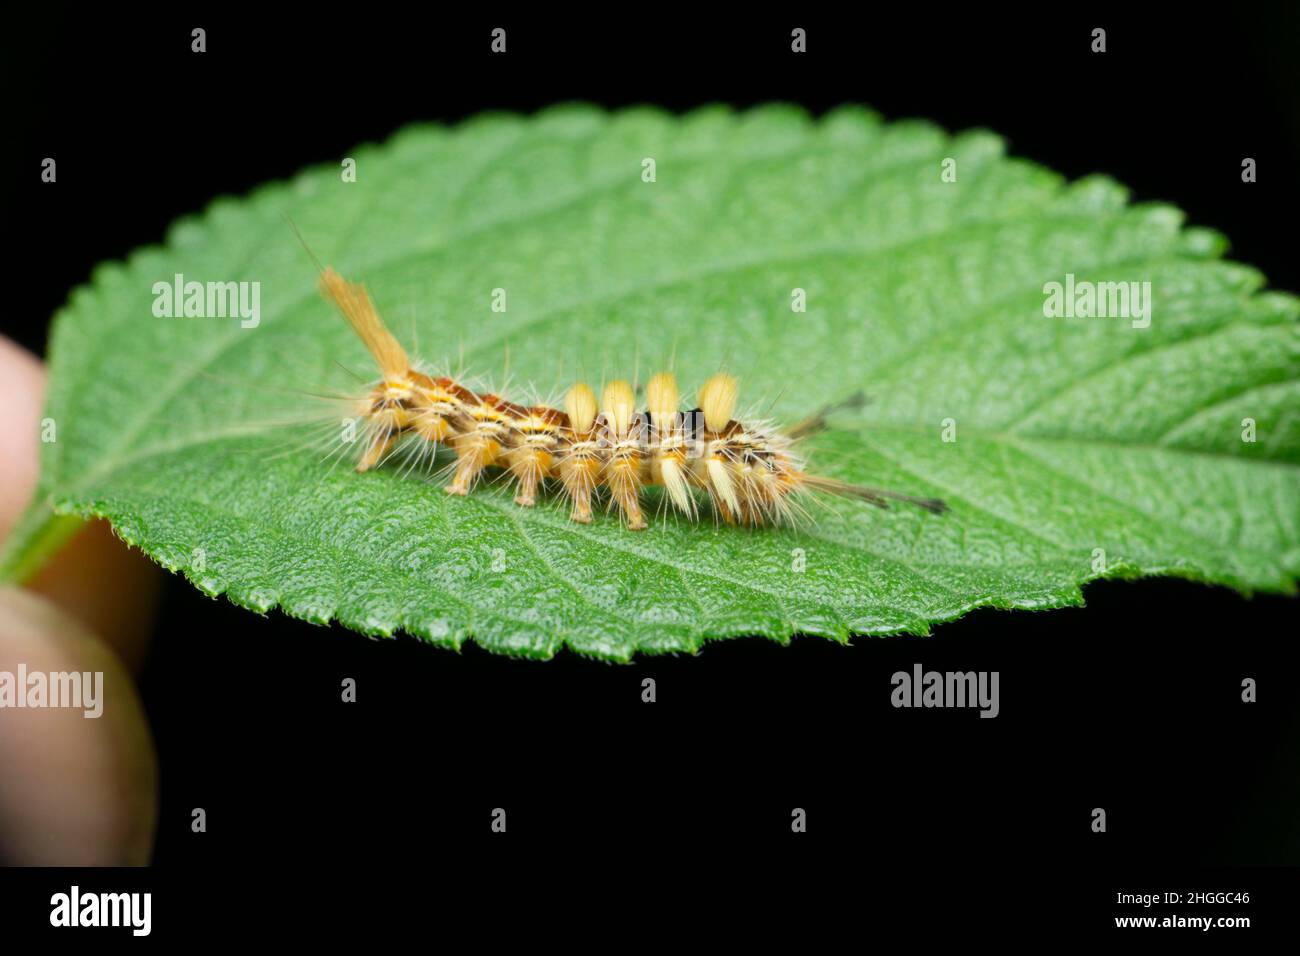 Caterpillar of moth species, Satara, Maharashtra, India Stock Photo